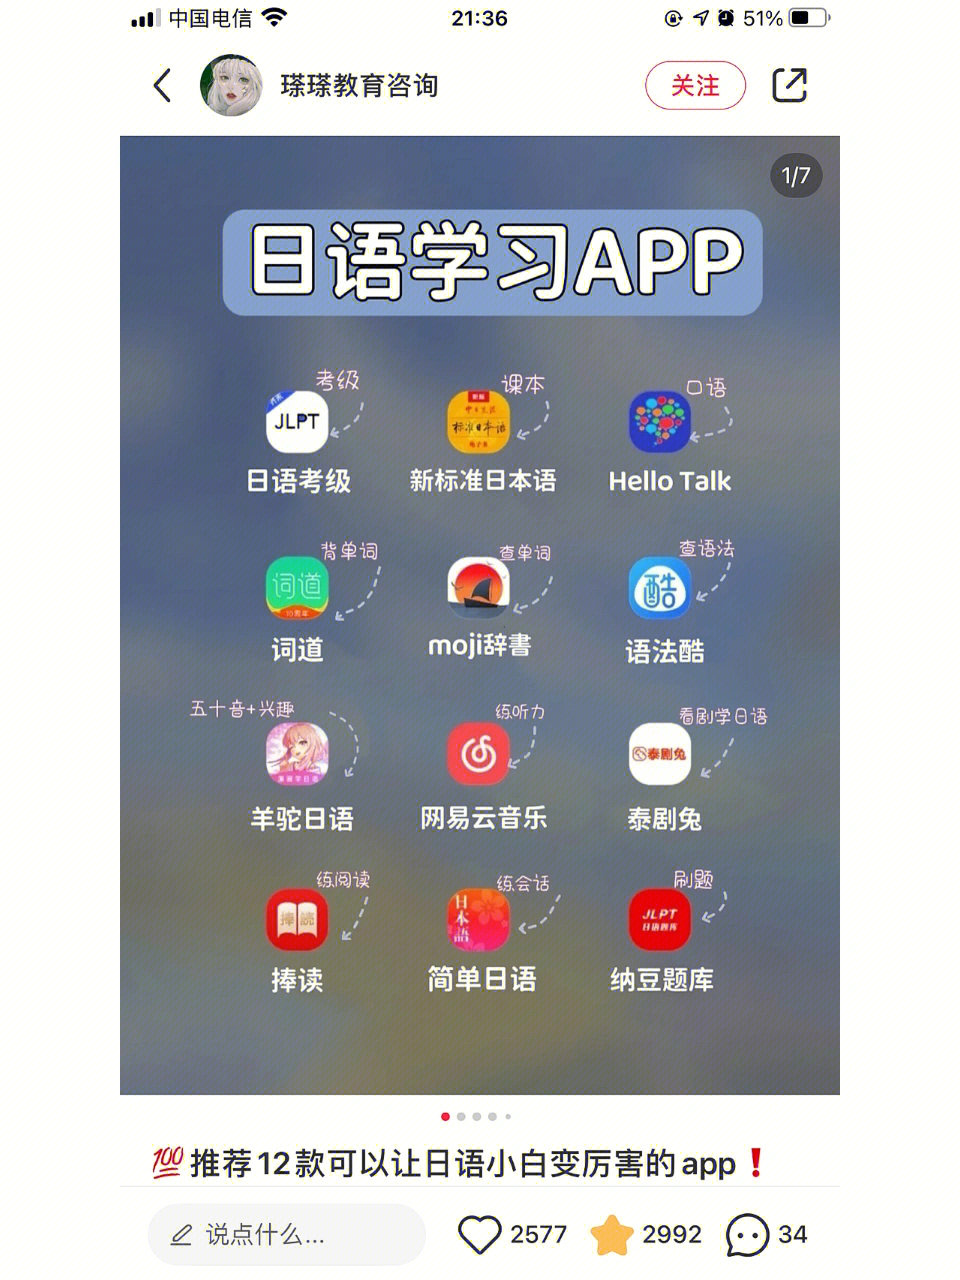 我目前下载的日语app因为我有日语基础就没有下载学习五十音图的app了